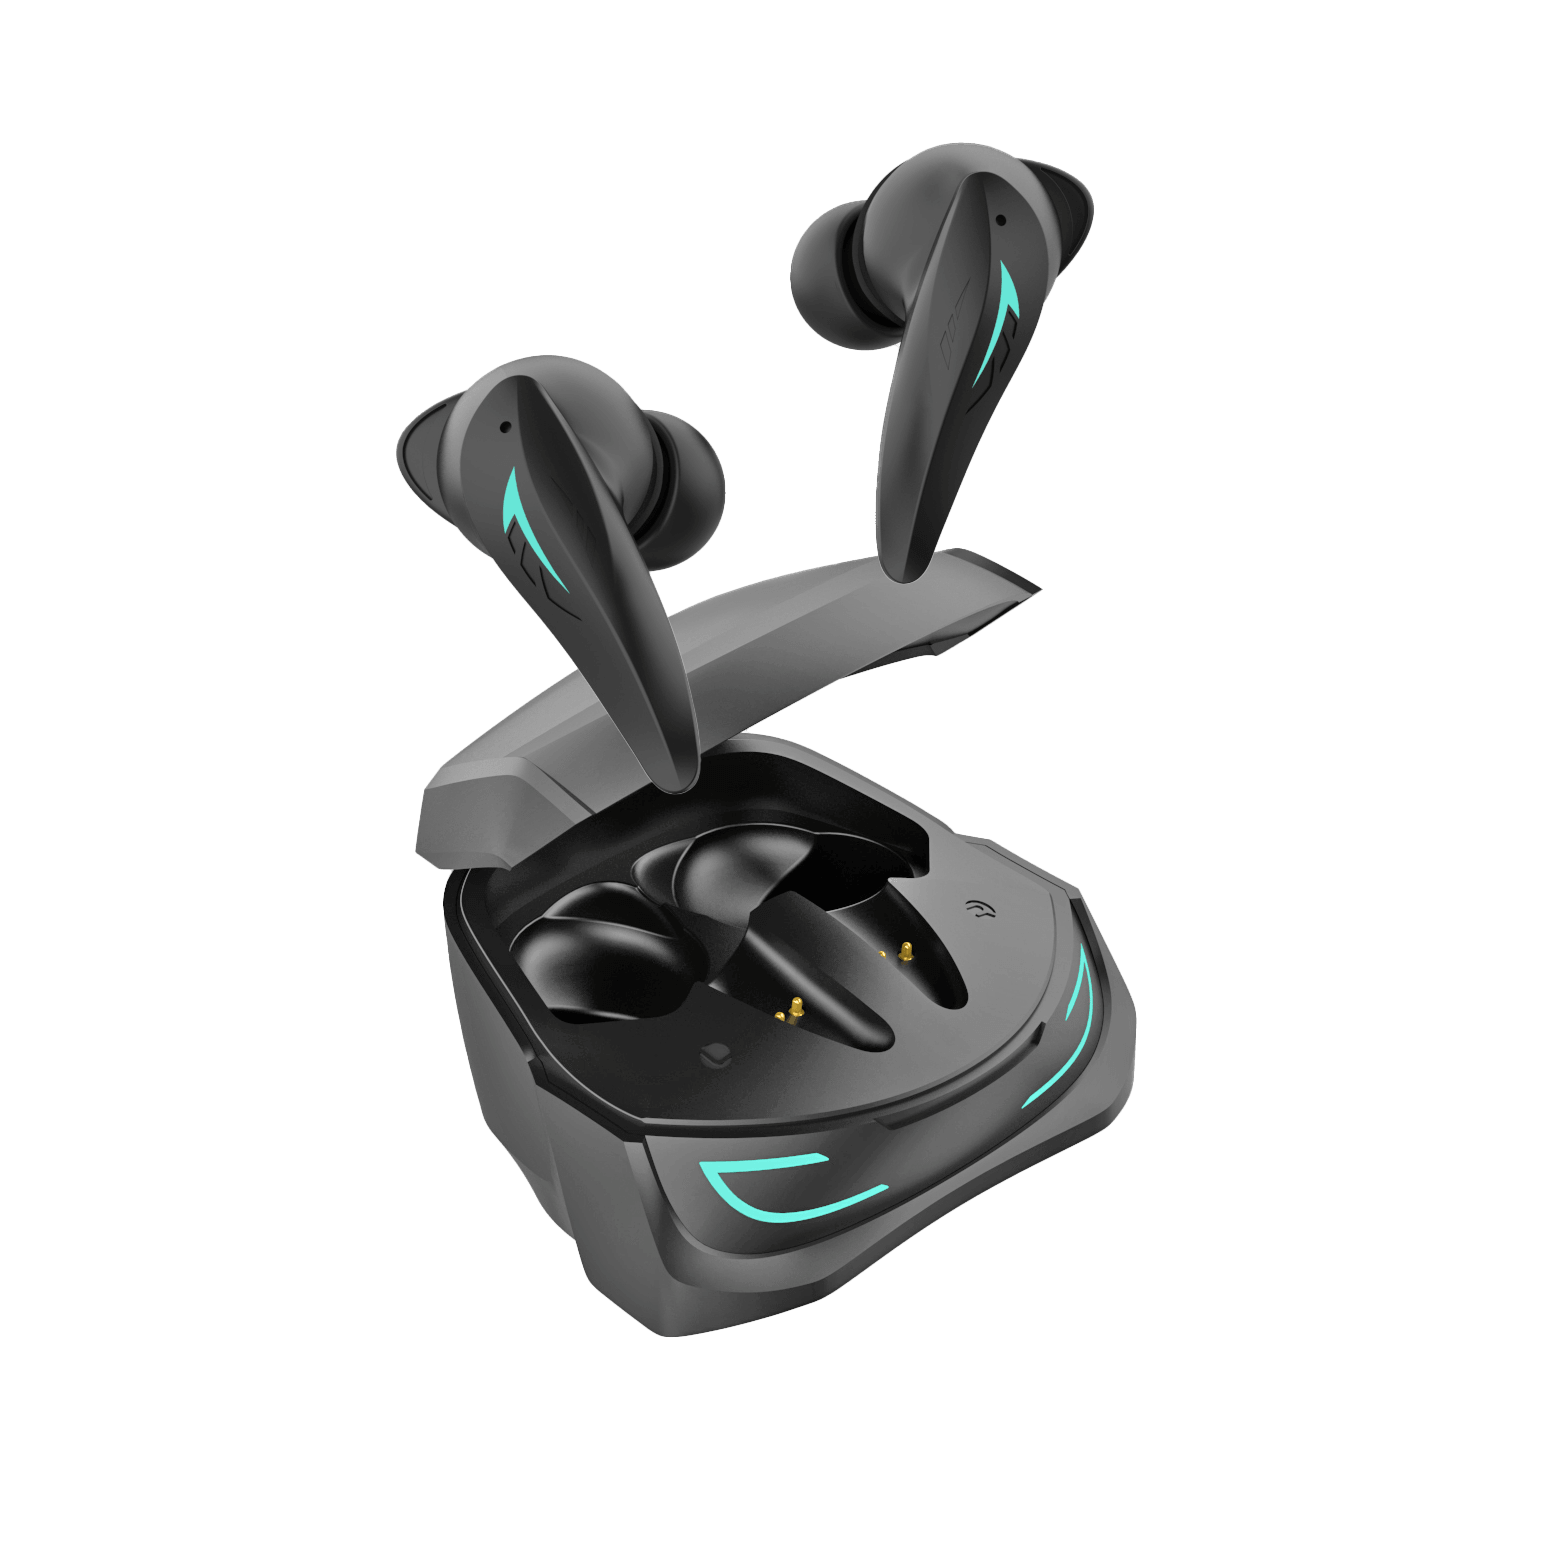 White Shark TITAN Bluetooth Earbuds (Black) - GameStore.mt | Powered by Flutisat